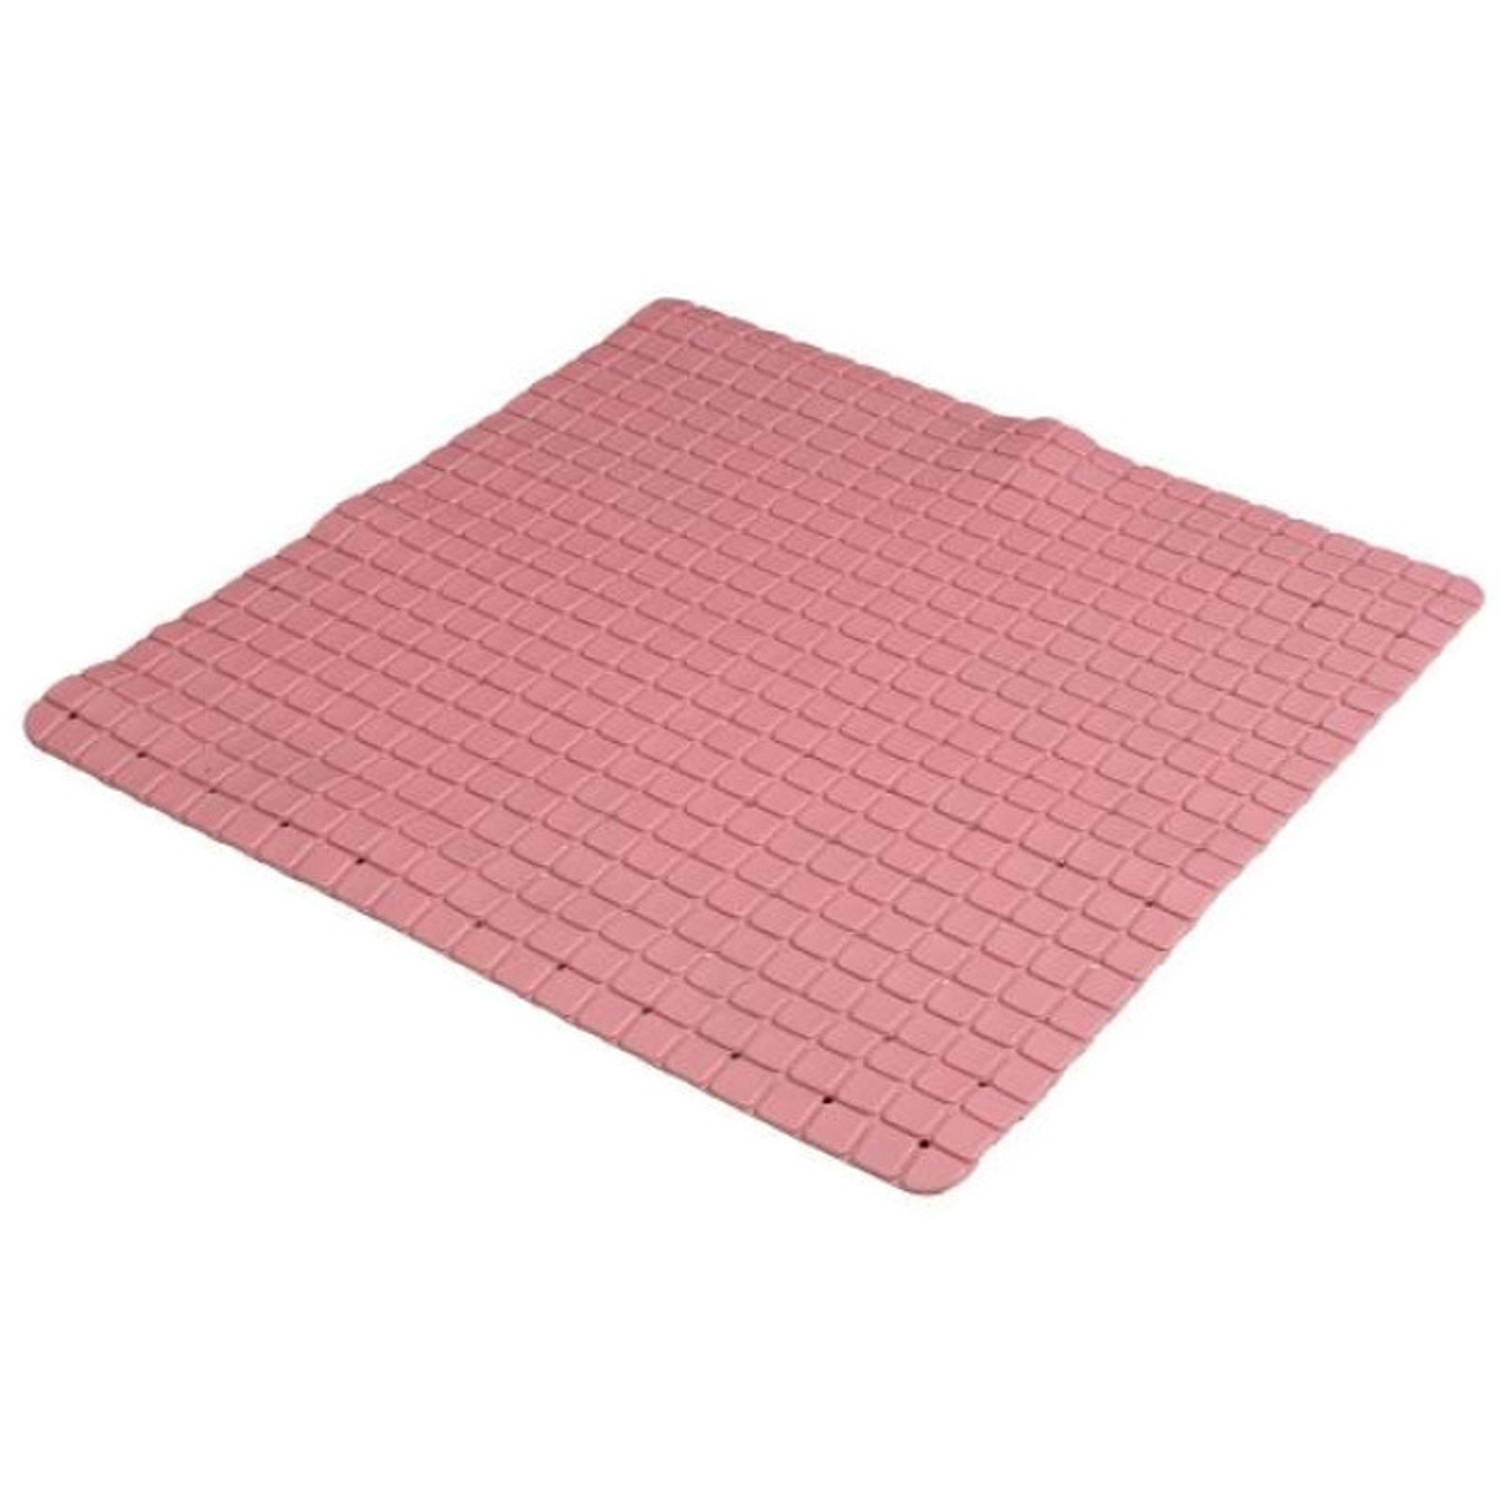 Urban Living Badkamer/douche anti slip mat - rubber - voor op de vloer - oud roze - 55 x 55 cm